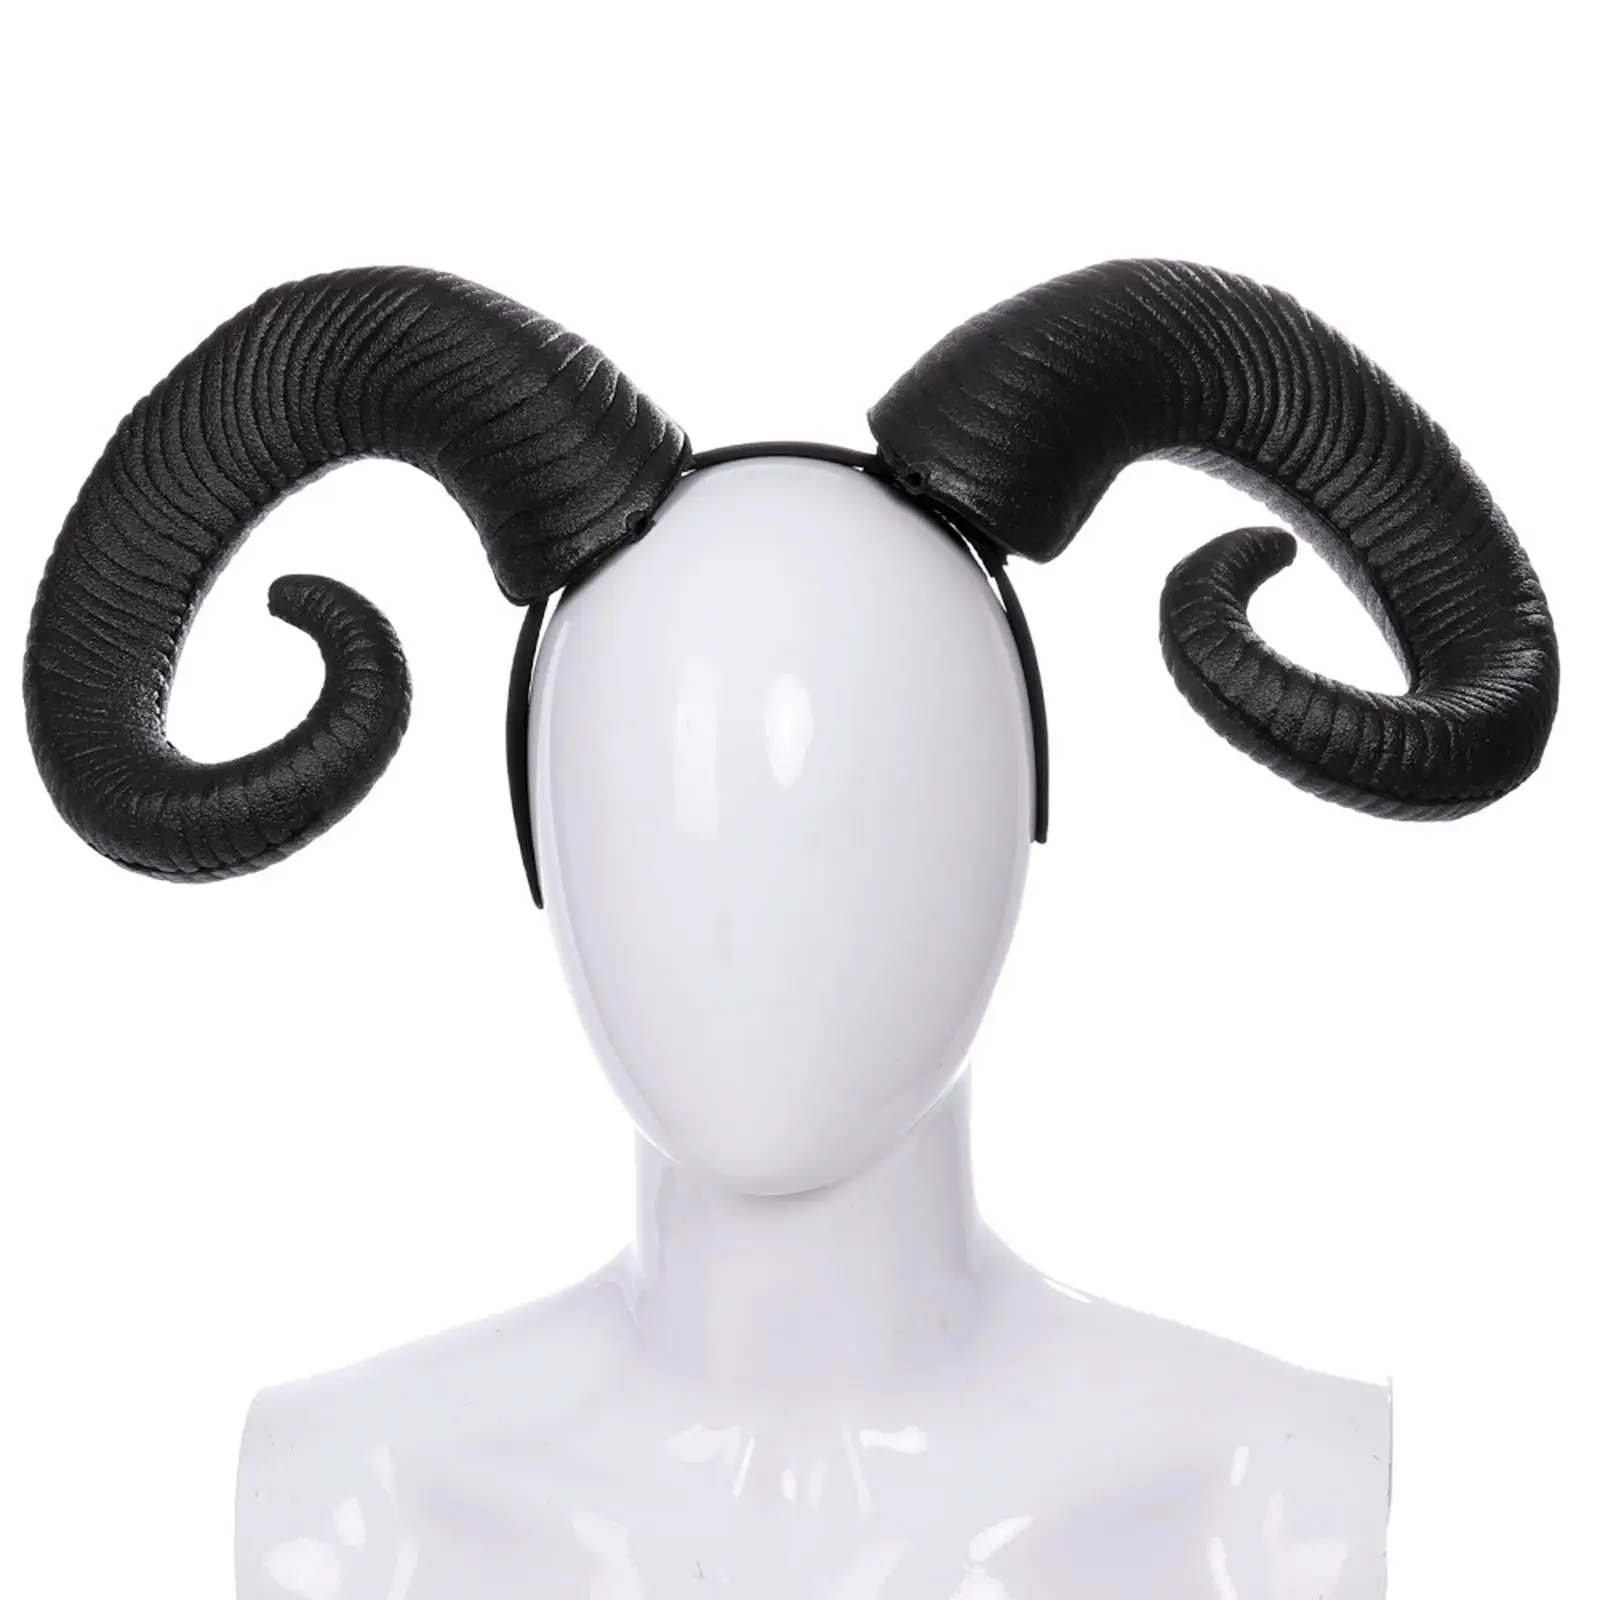 Headband Hair Band RAM Horns Sheep Horn for Cosplay Christmas Halloween